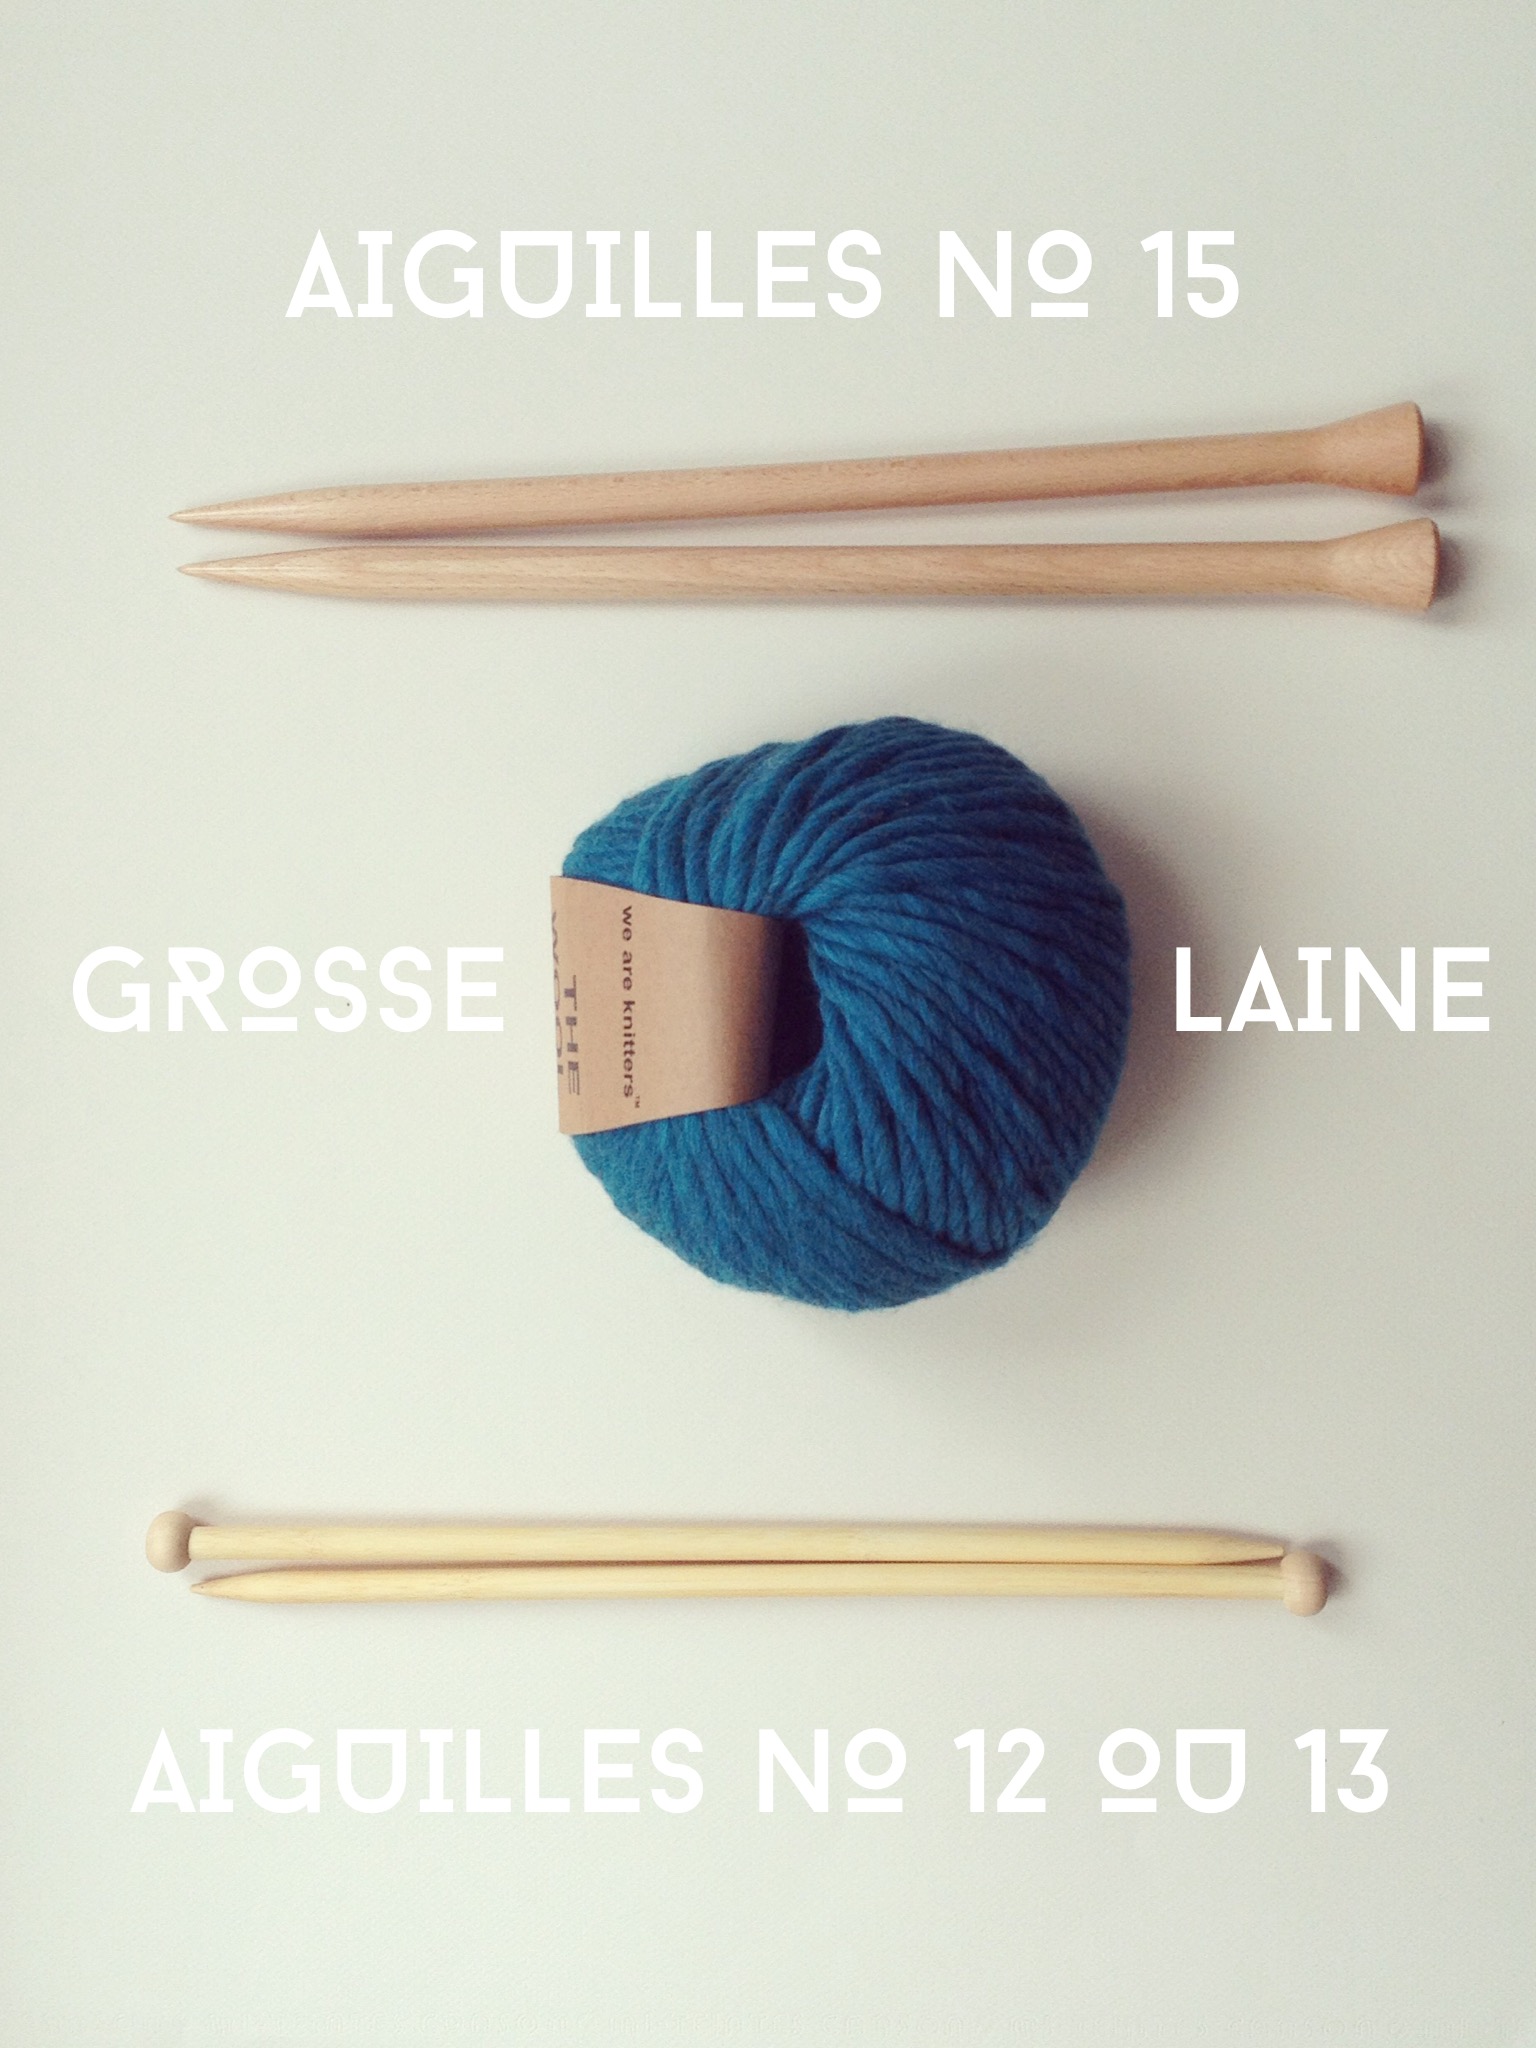 13 idées pour tricoter des moufles et gants - Marie Claire